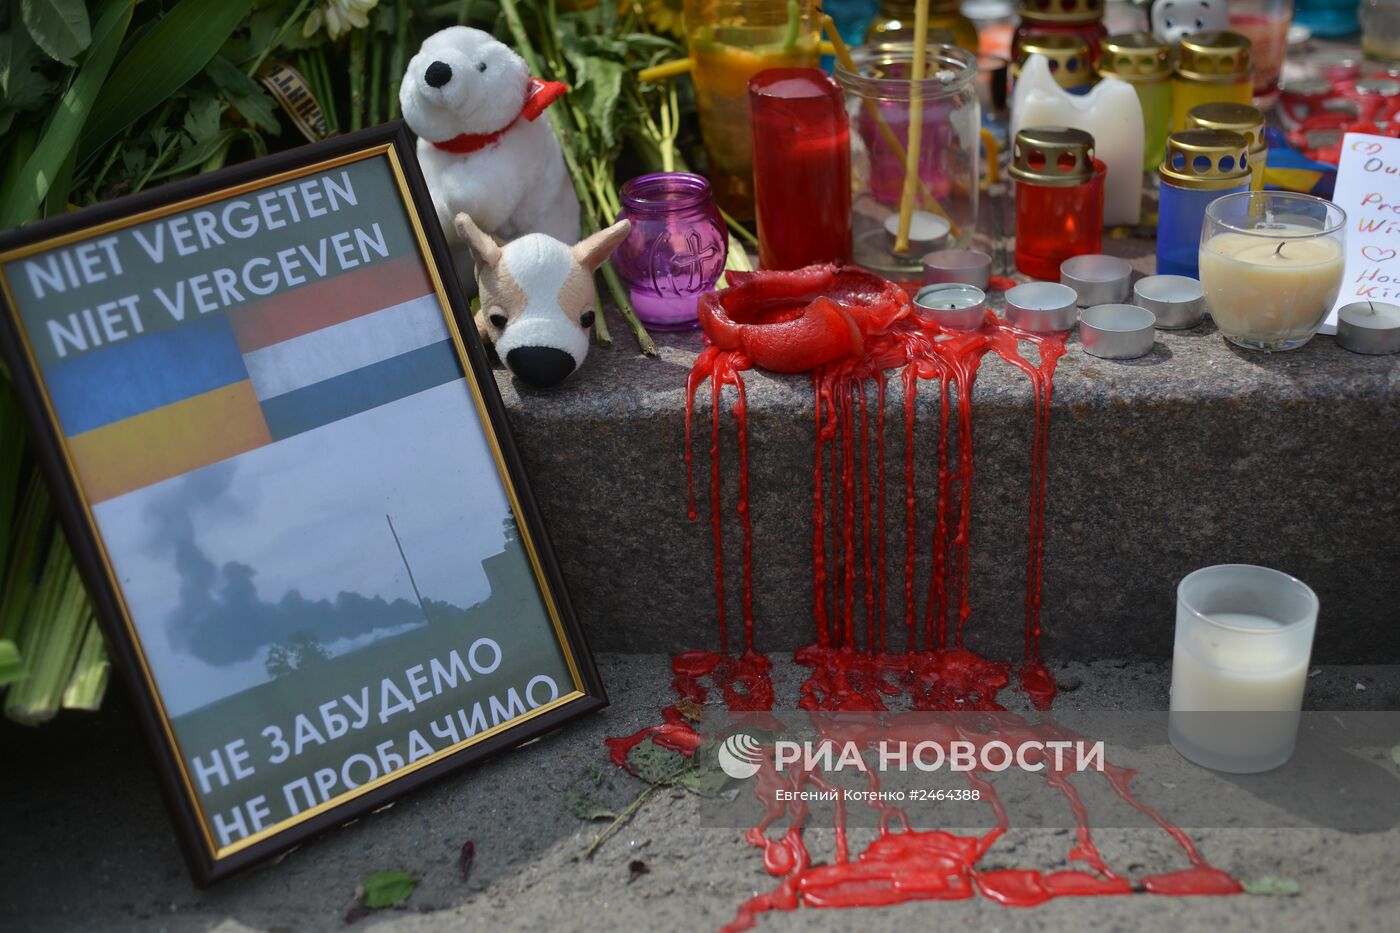 Люди несут цветы в память о погибших в авиакатастрофе в Донецкой области